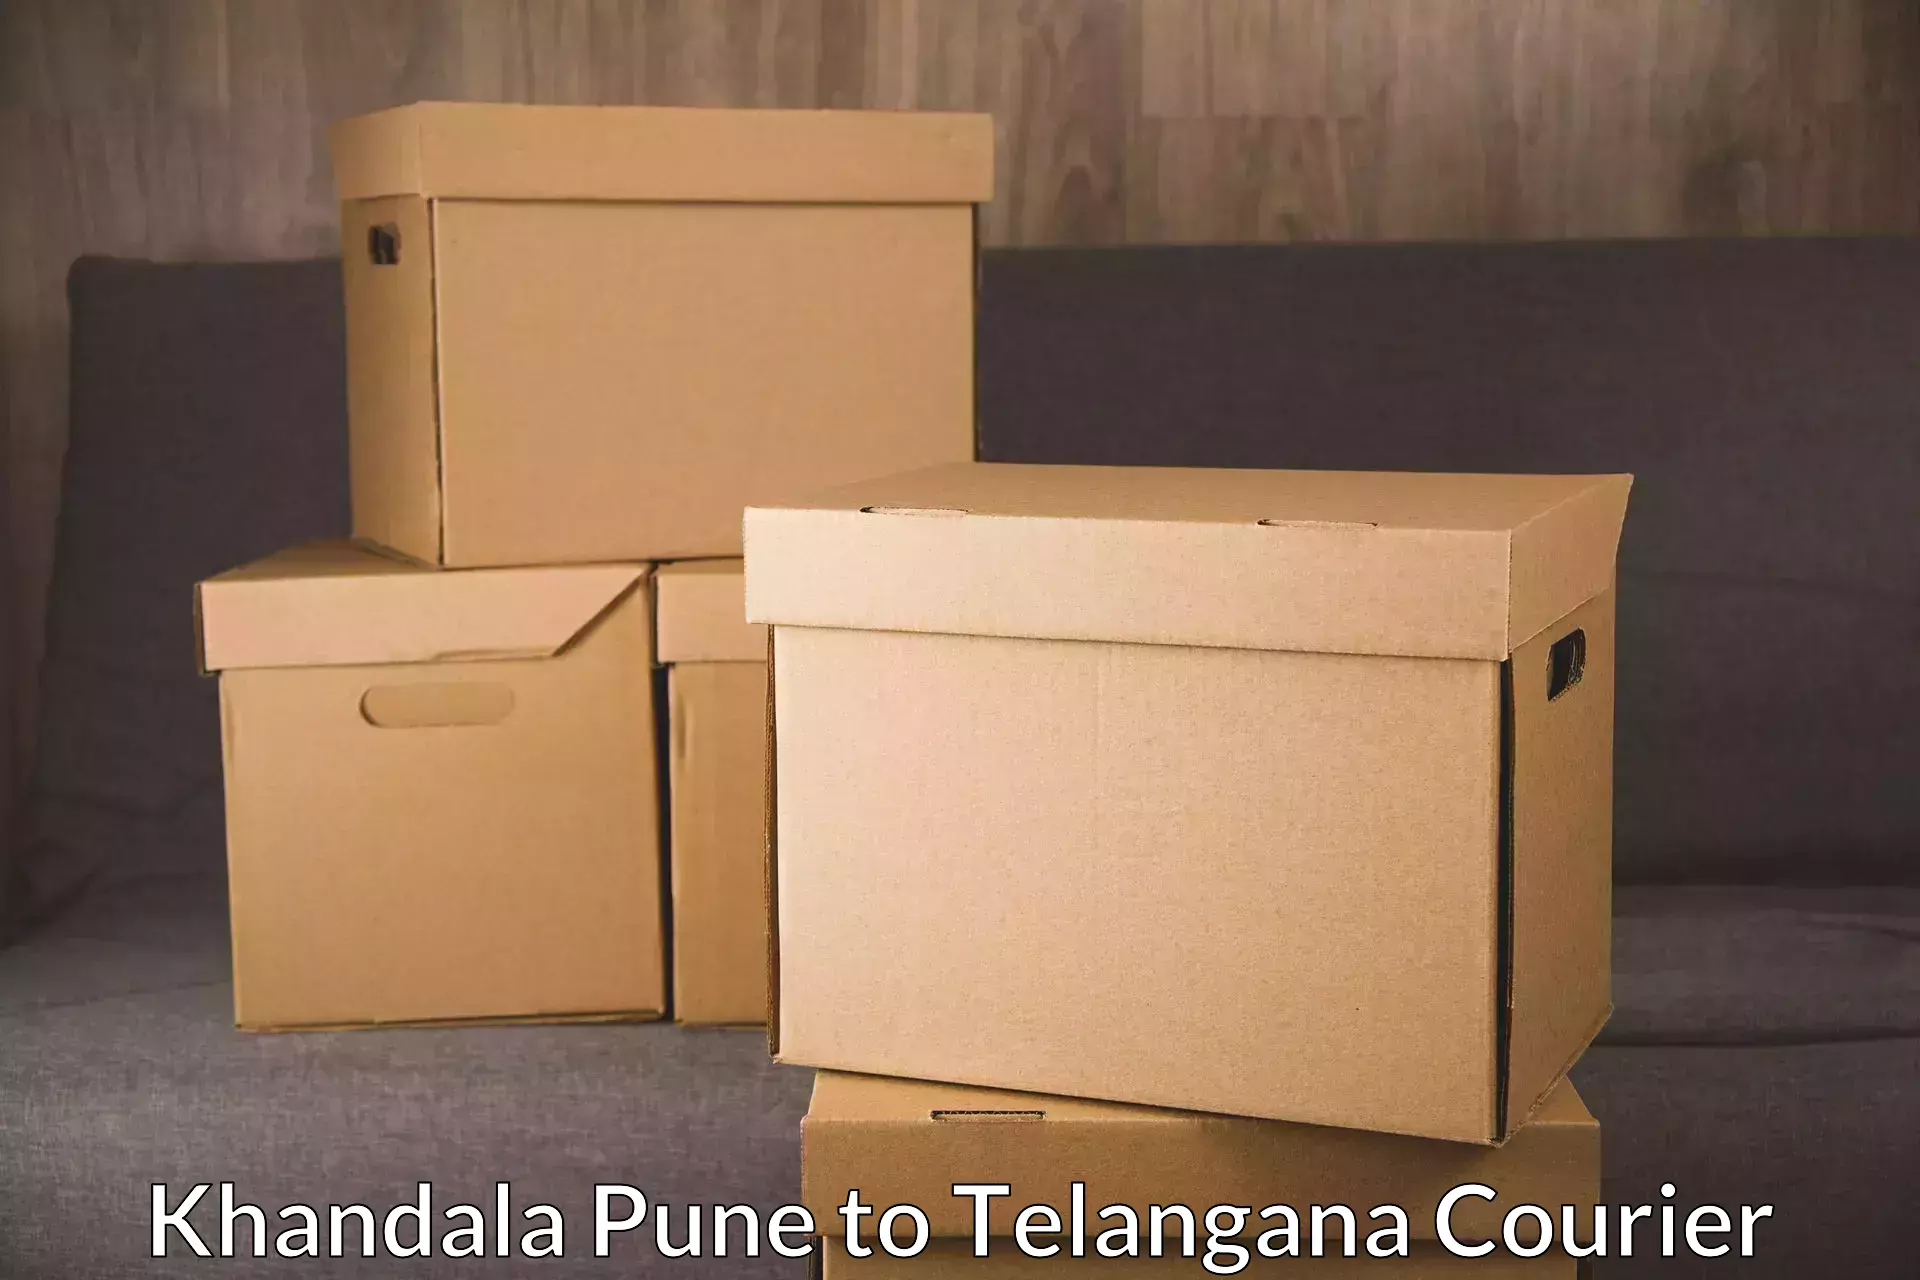 Integrated logistics solutions Khandala Pune to Telangana